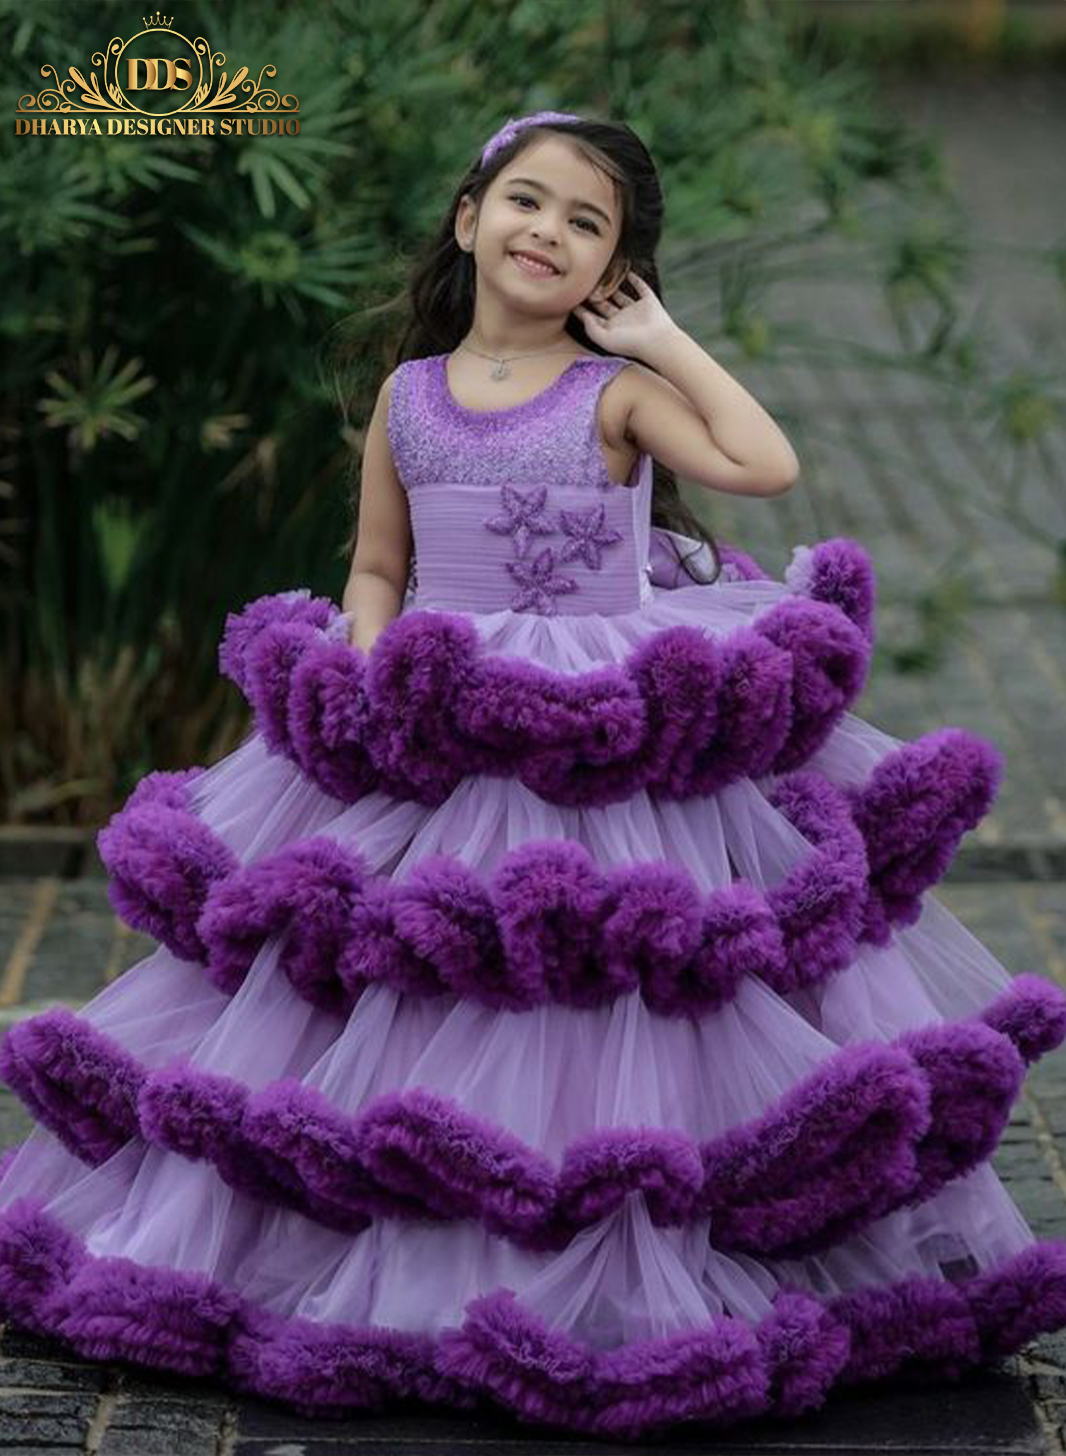 crianca com dress